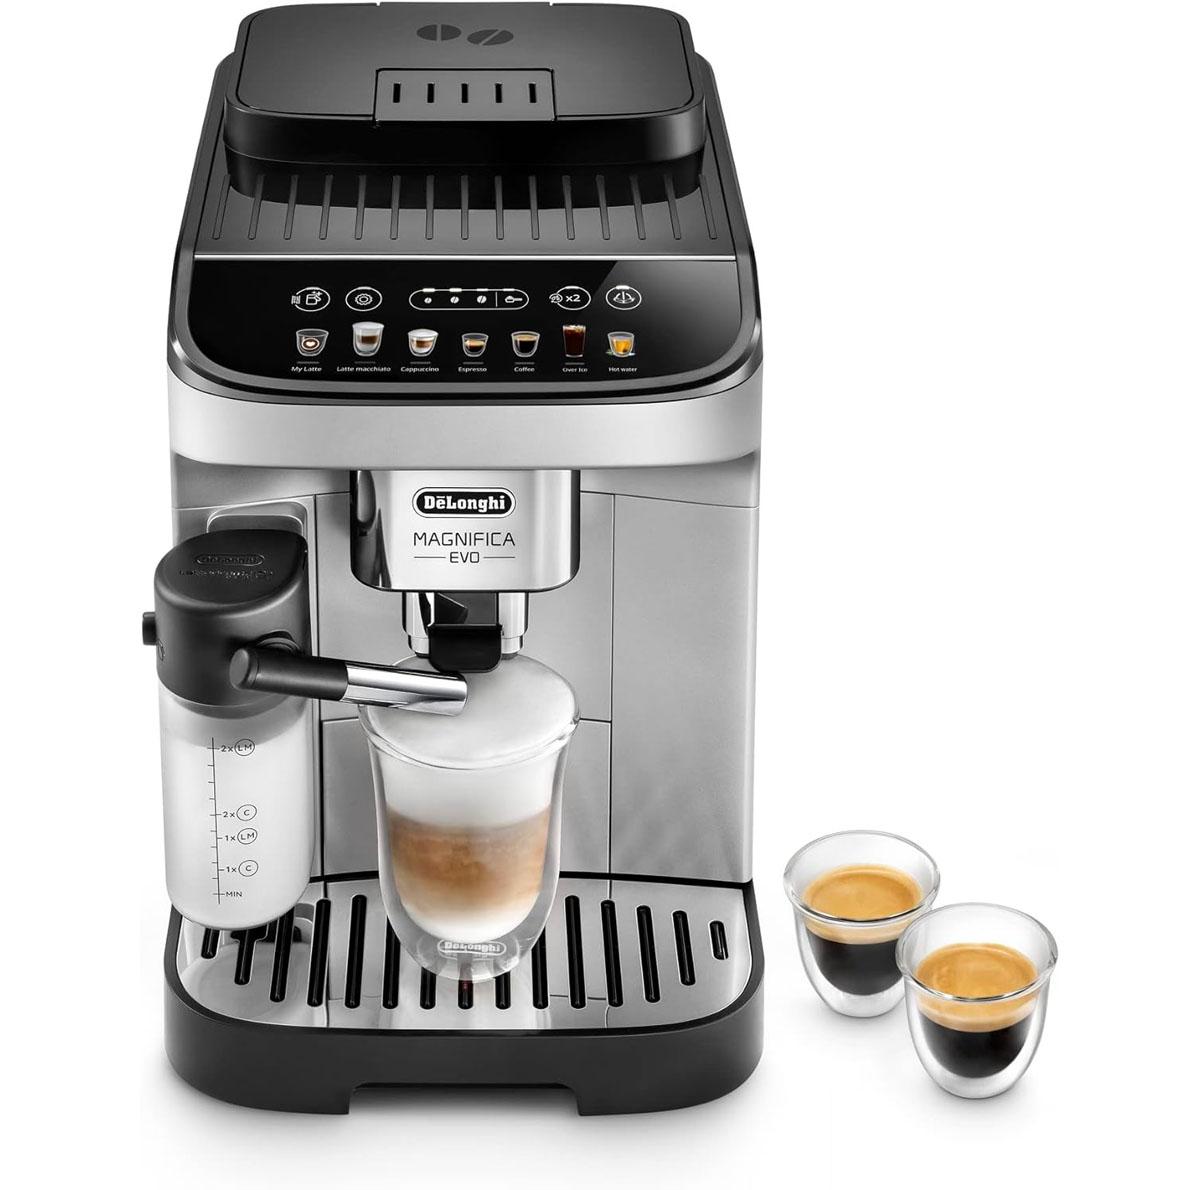 DeLonghi Magnifica Evo LatteCrema System Espresso Coffee Maker for $549.95 Shipped